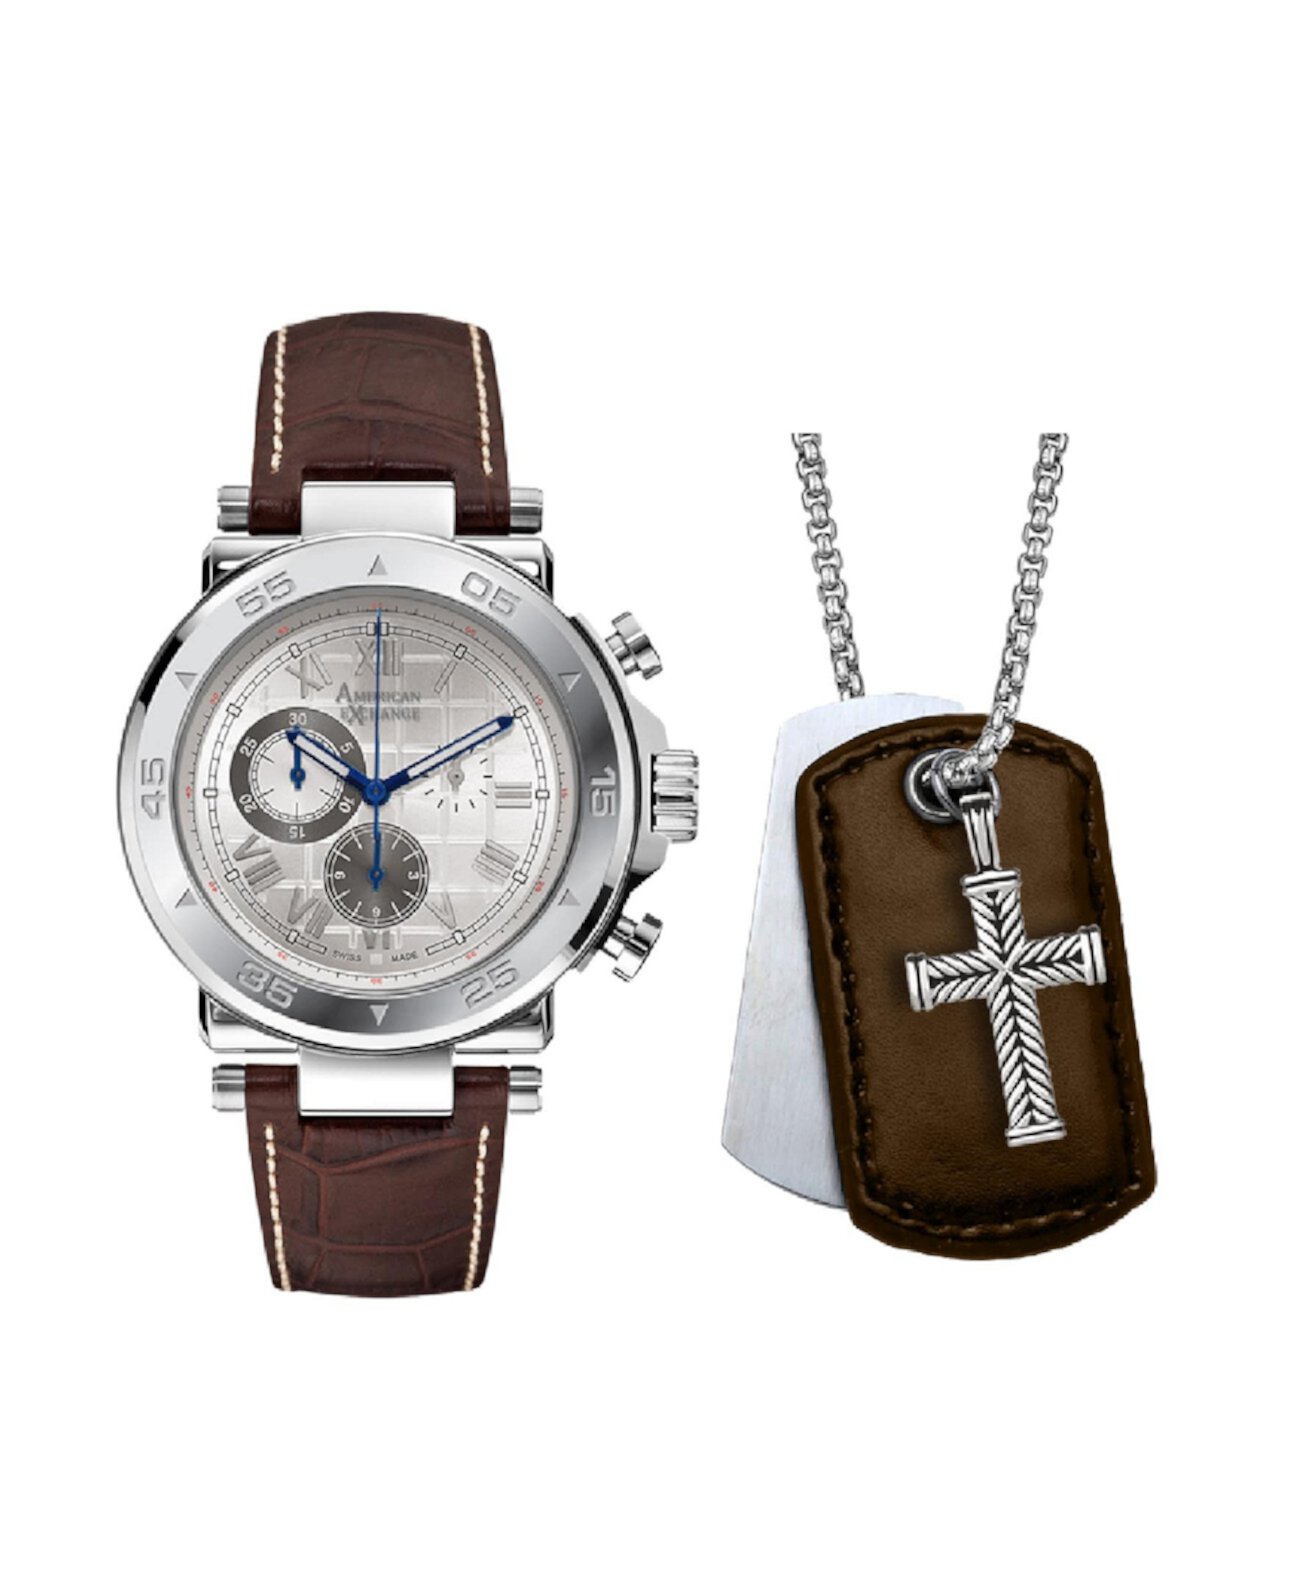 Мужские аналоговые кварцевые часы с тремя стрелками и коричневым кожаным ремешком, 44 мм, подарочный набор American Exchange